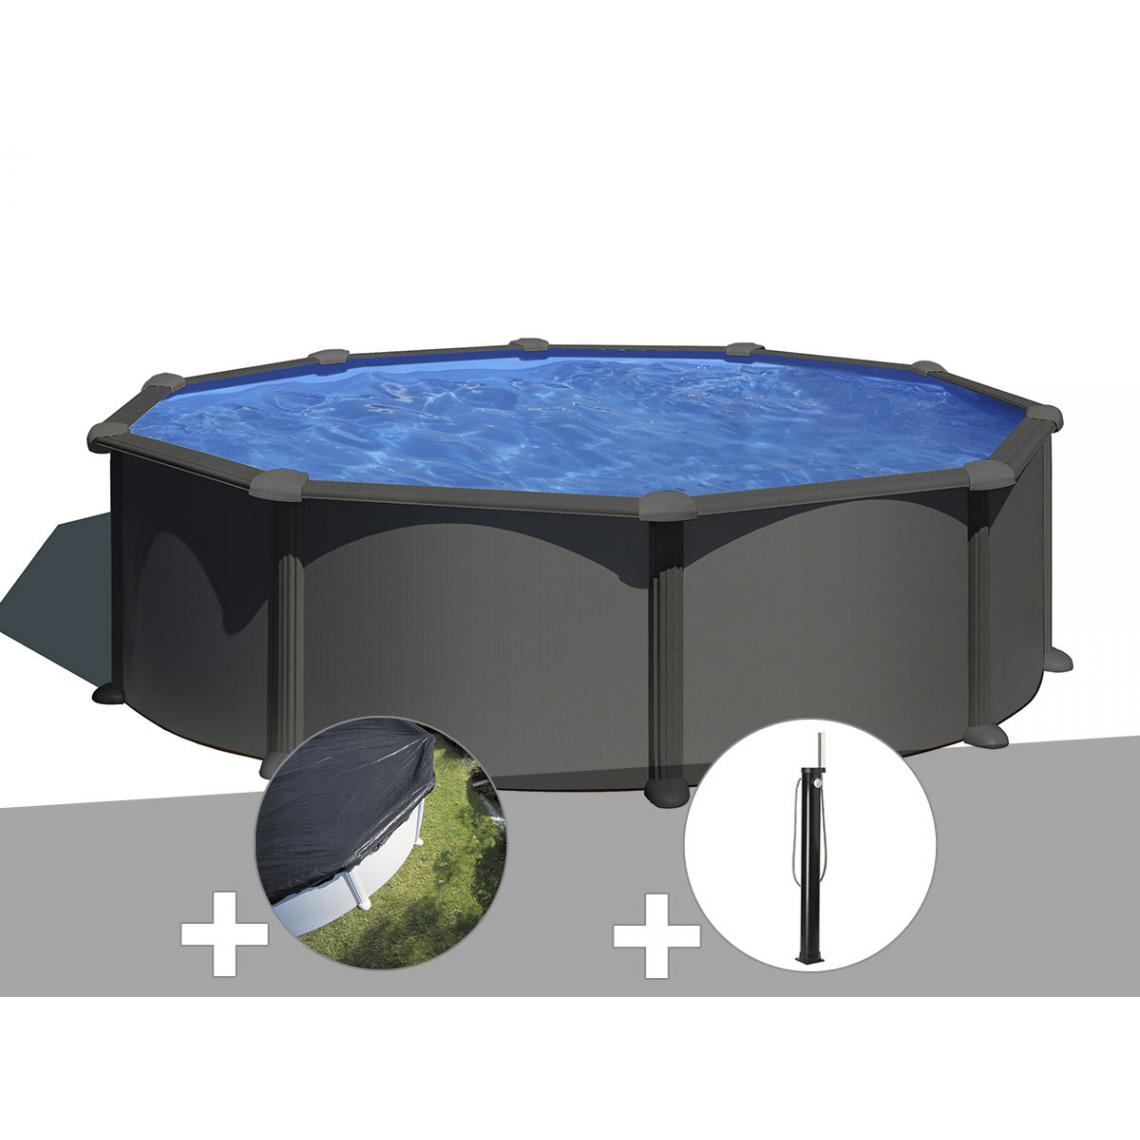 Gre - Kit piscine acier gris anthracite Gré Juni ronde 3,70 x 1,32 m + Bâche d'hivernage + Douche - Piscines acier et résine